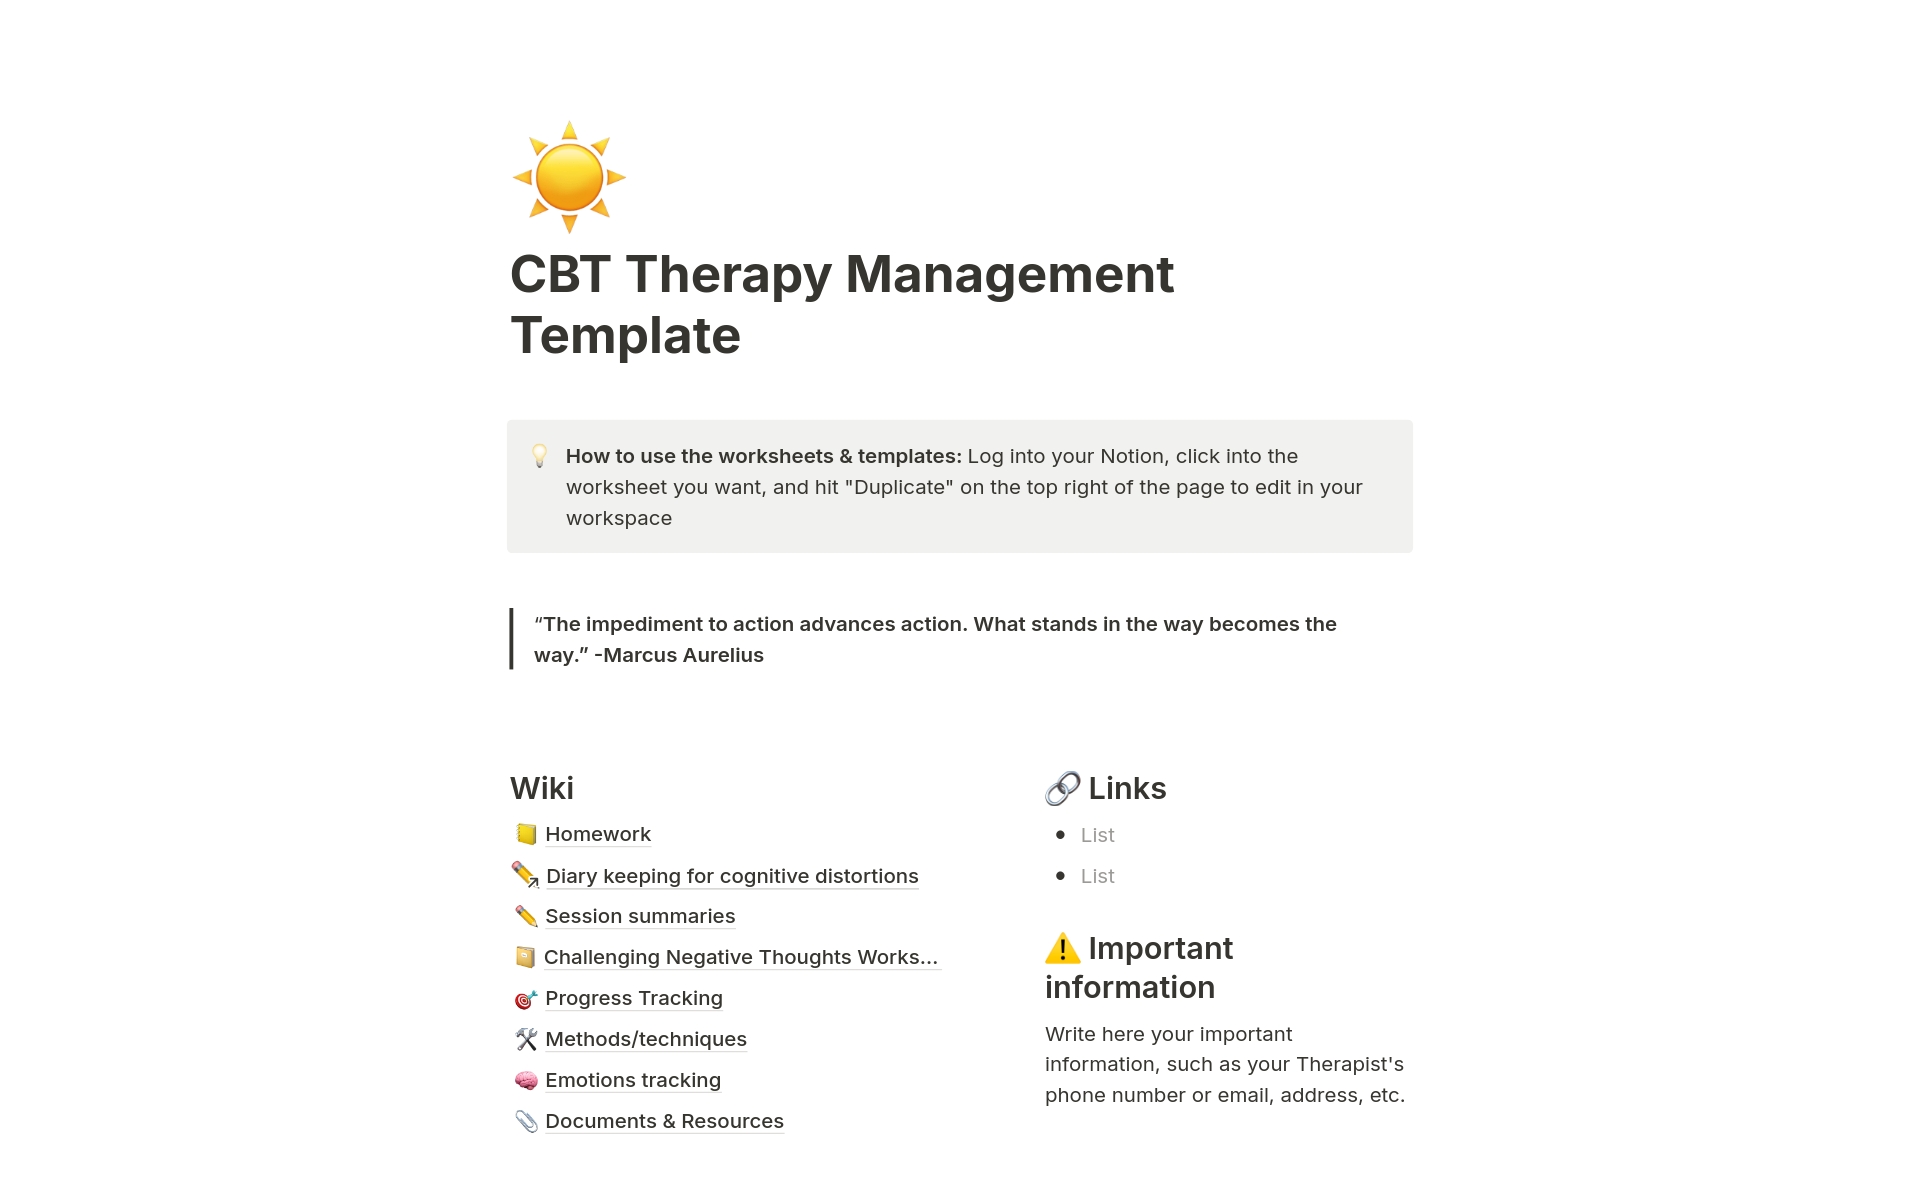 Aperçu du modèle de CBT Therapy Management